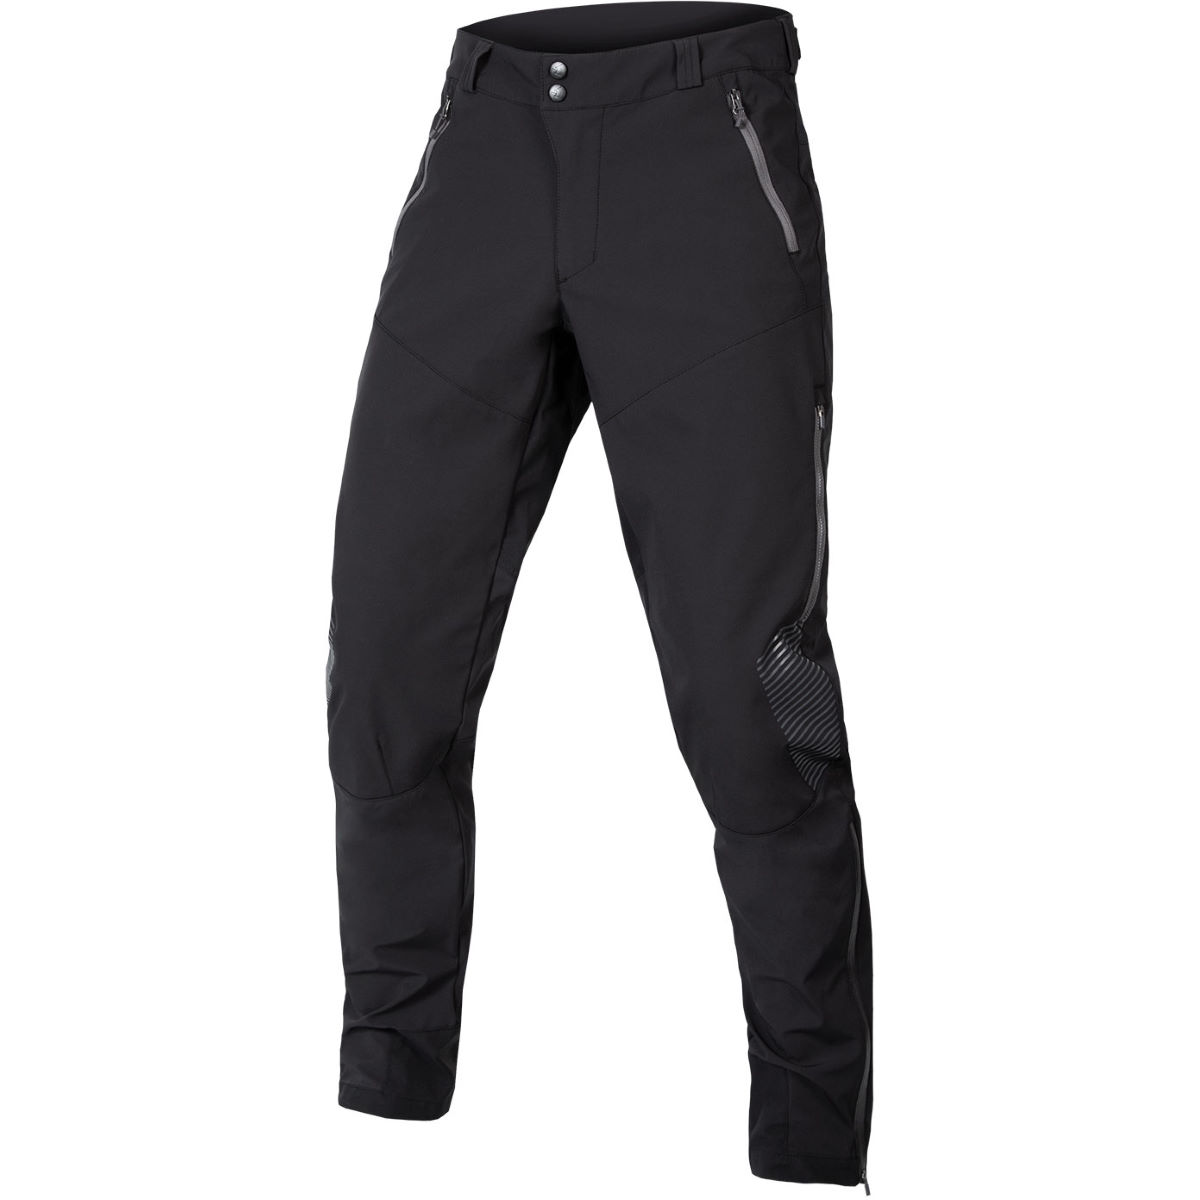 Pantalón de MTB Endura MT500 Spray (trasero impermeable) - Pantalones